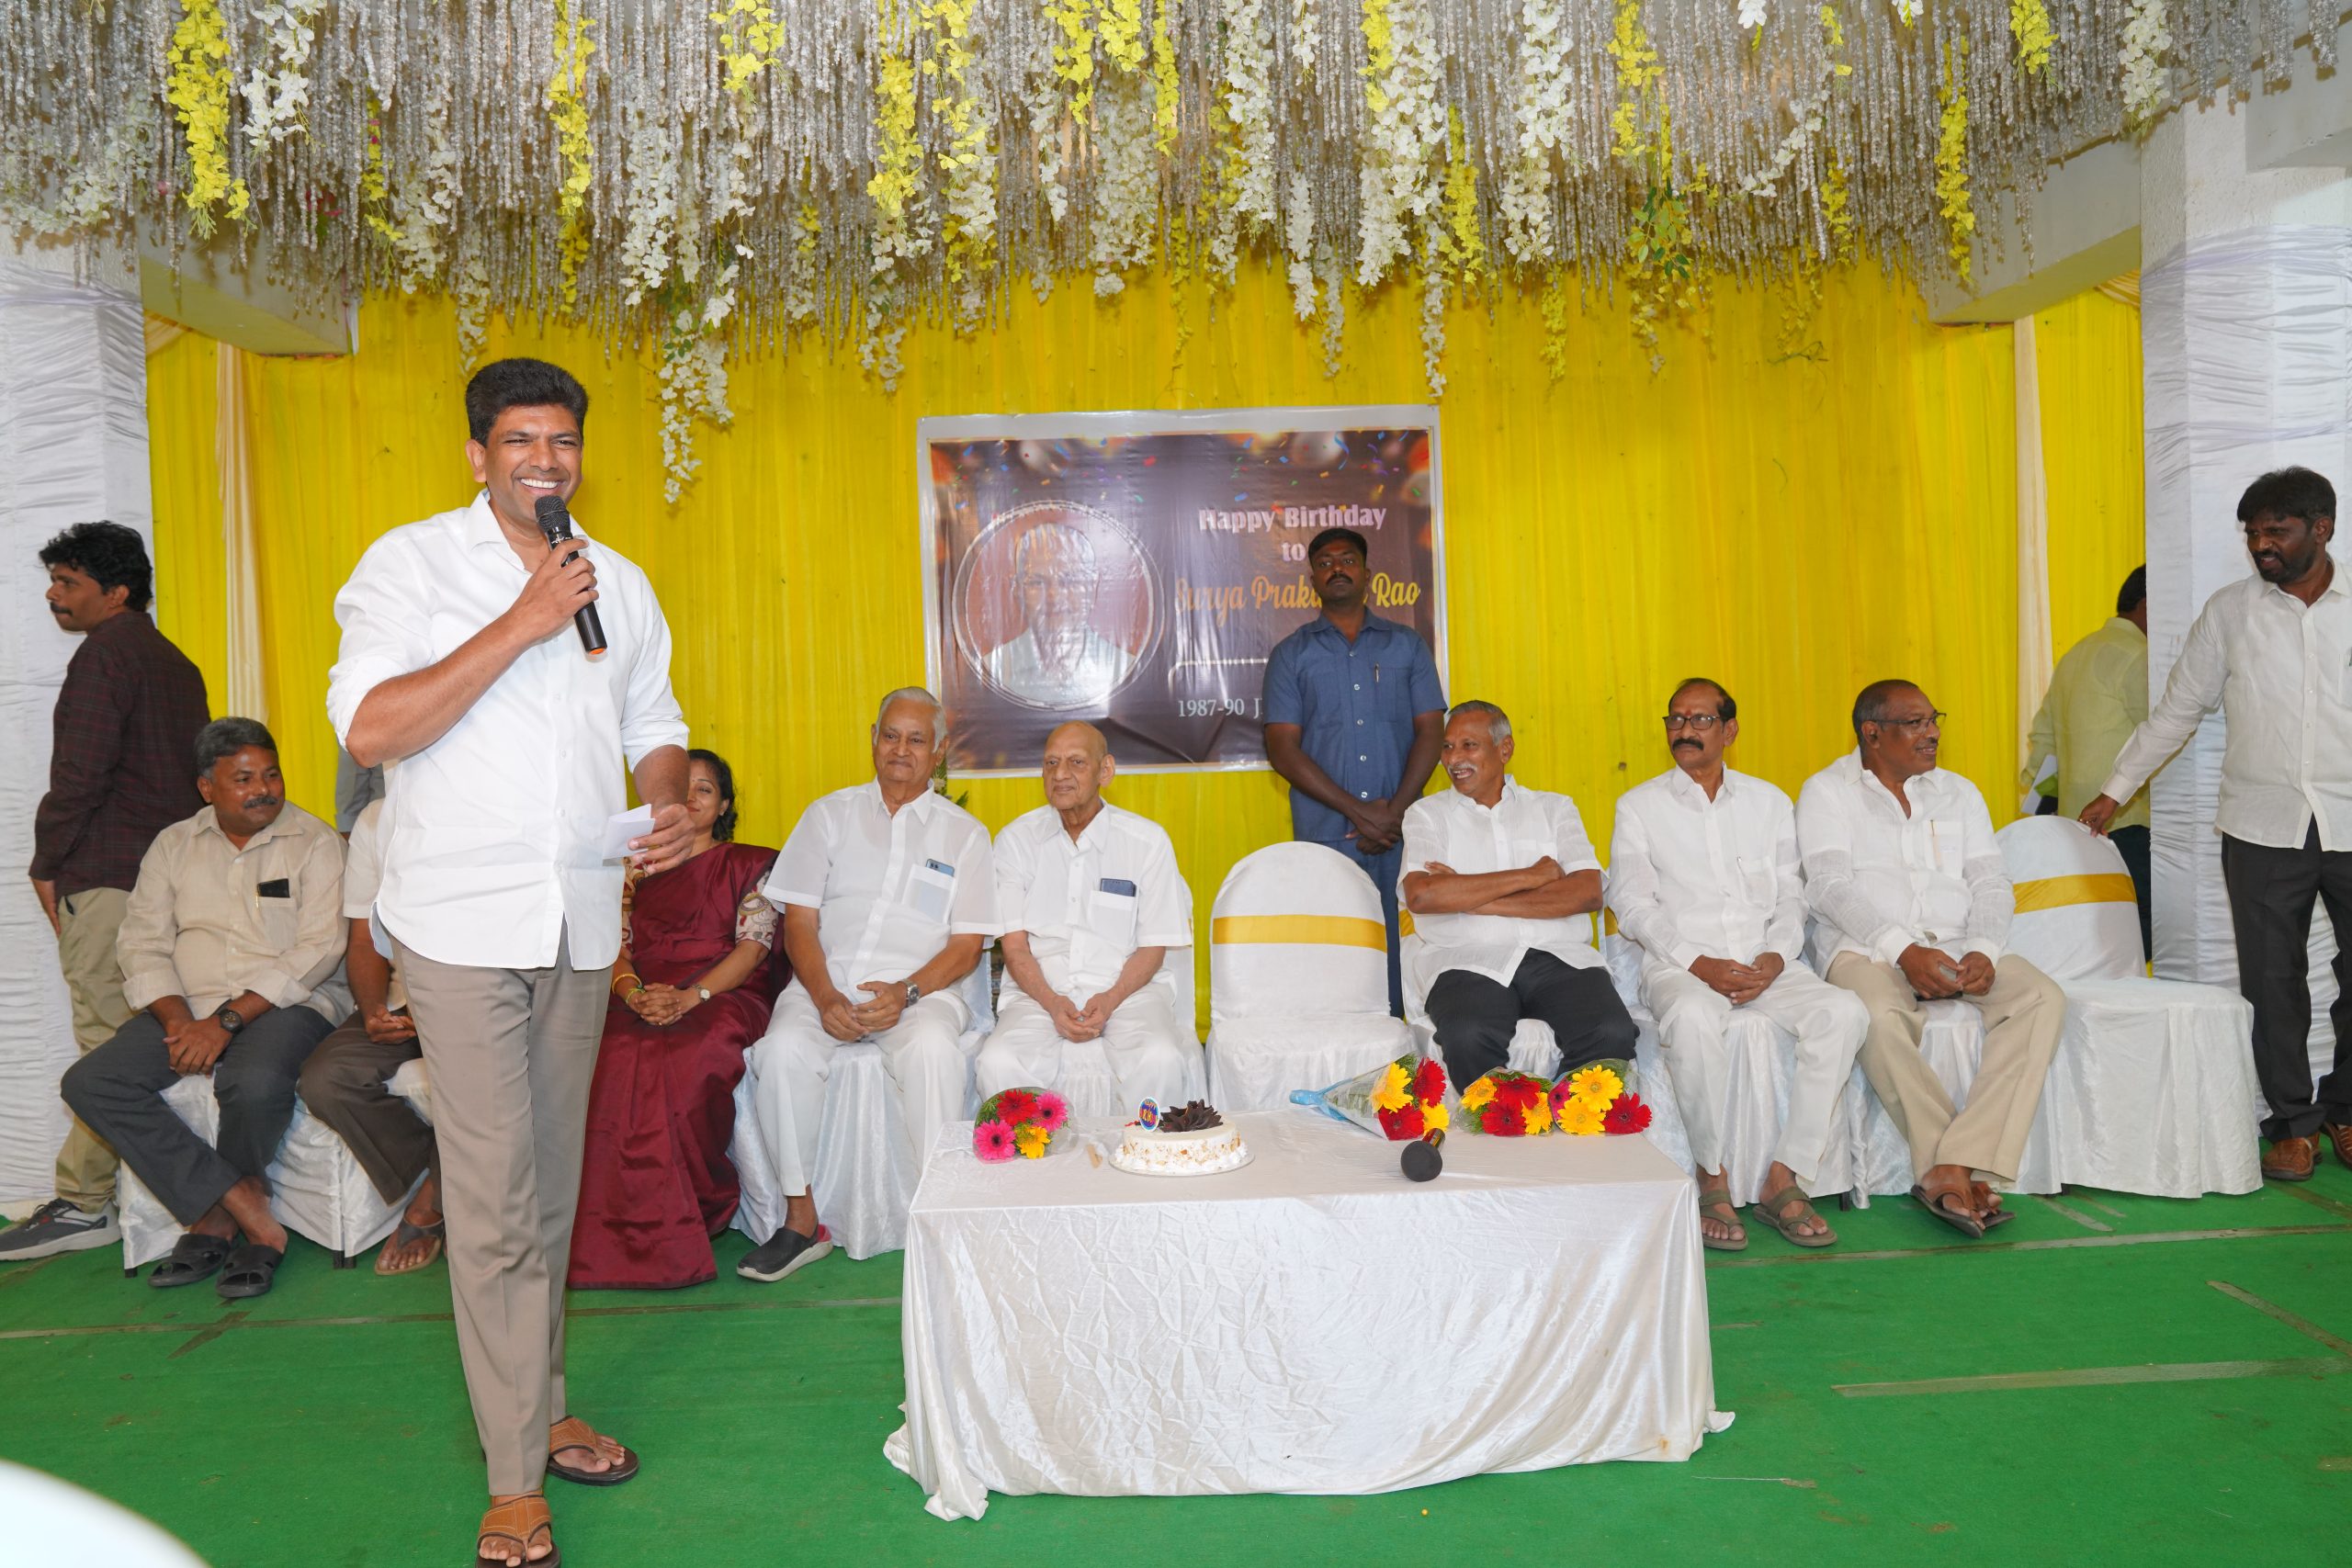 At Birthday celebration of Surya Prakash